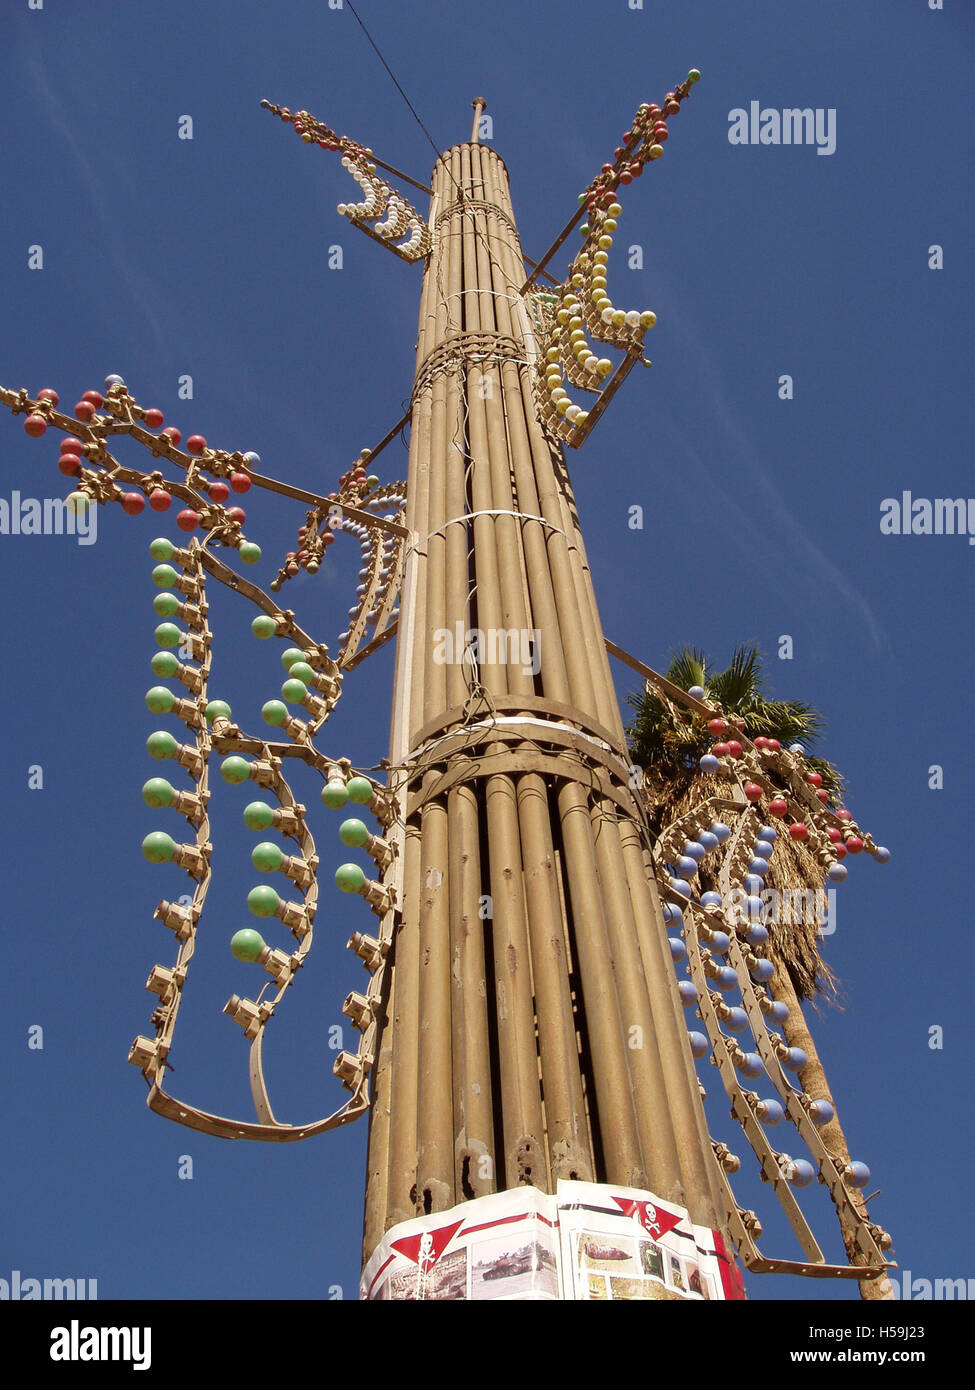 15 novembre 2003 dans place Kahramana, Bagdad : un grand pôle décoratif de tubes en métal représentant un tas de broussailles ou de roseaux, symbolisant l'unité. Banque D'Images